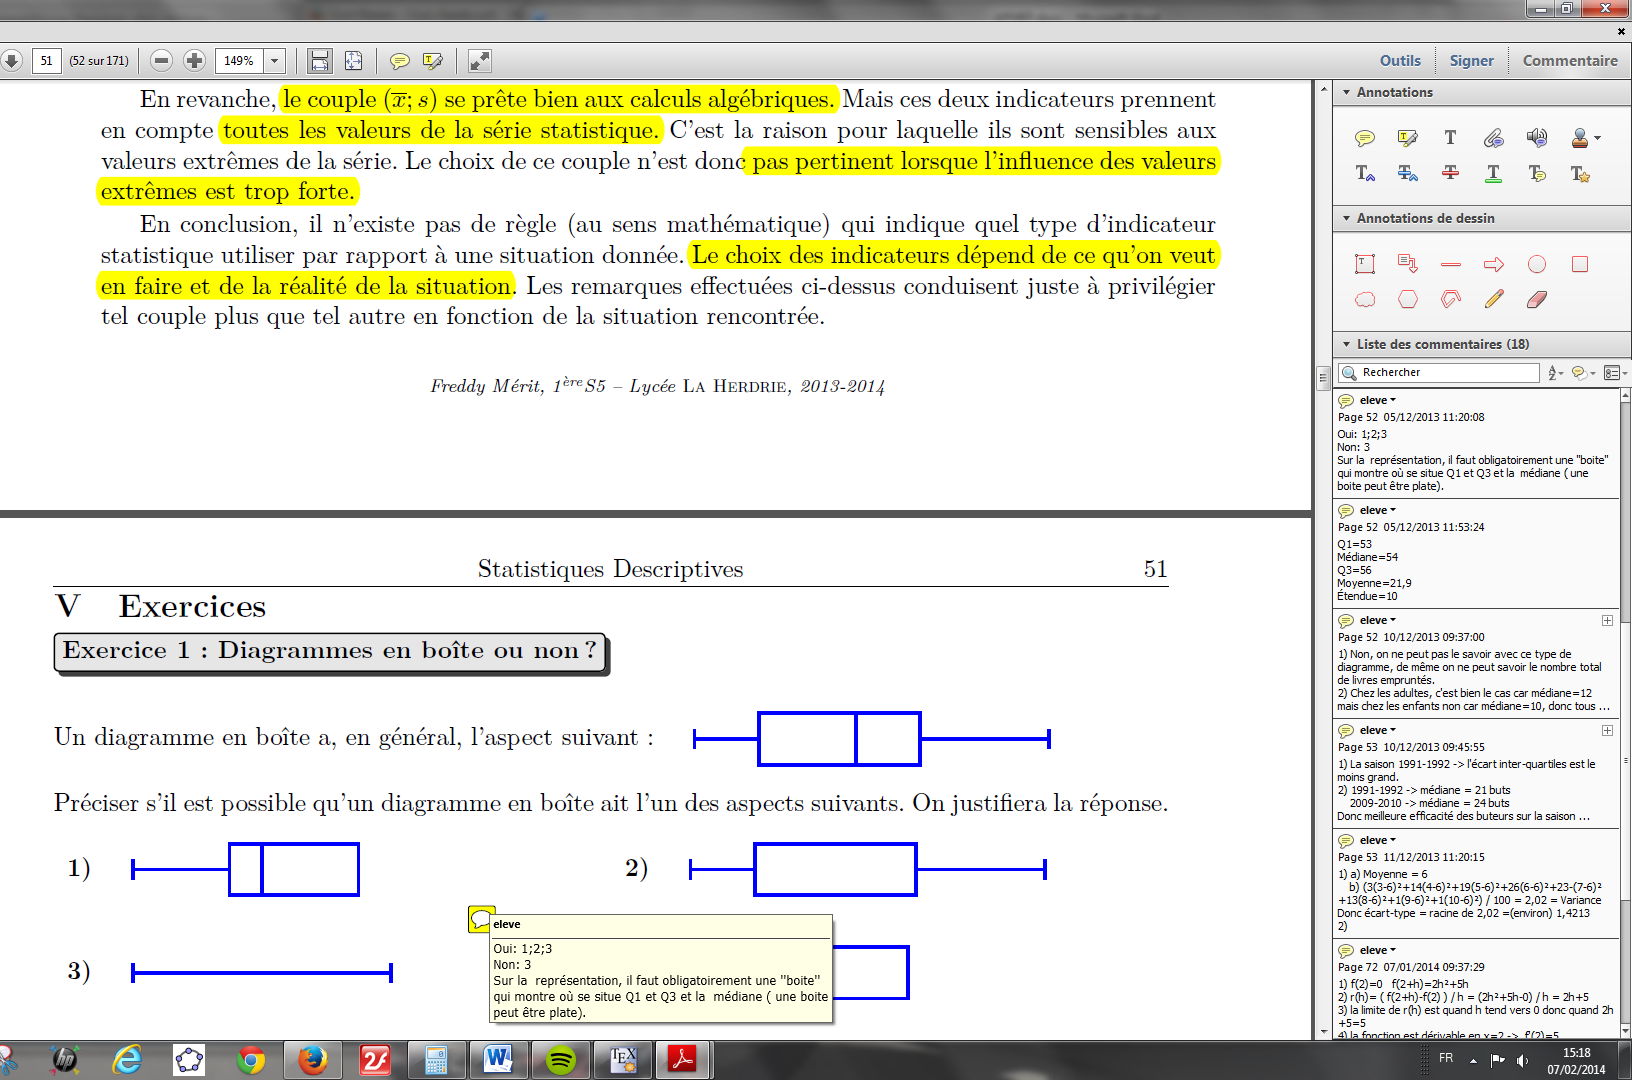 L insertion de notes dans le document permet aussi d ajouter la correction sommaire d exercices (p51).